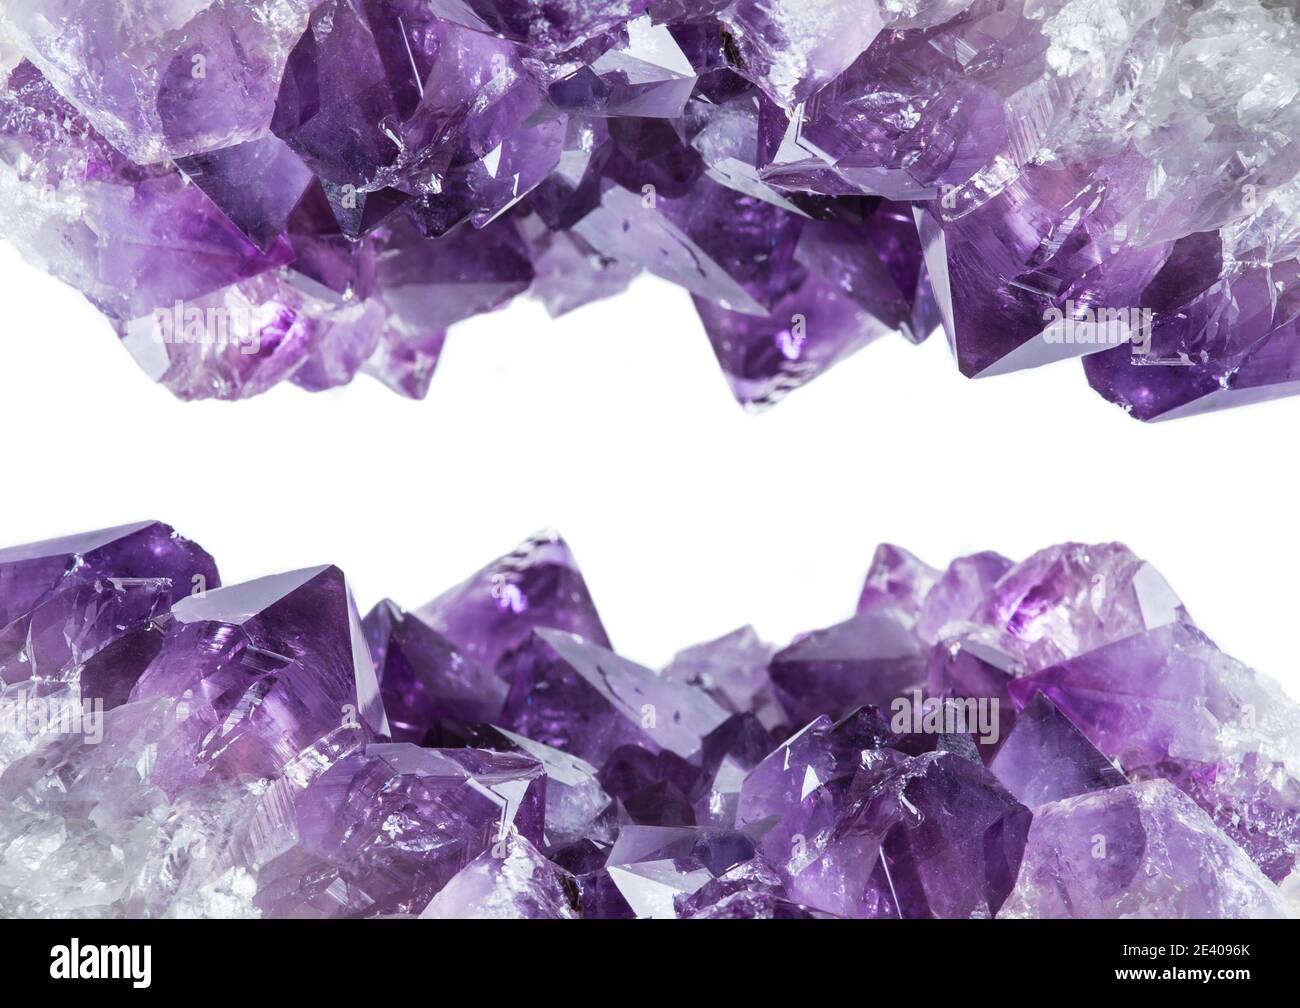 Vue rapprochée de la bordure du grand amas de cristaux d'améthyste violet isolée sur fond blanc. Concept d'arrière-plan magique ésotérique. Banque D'Images